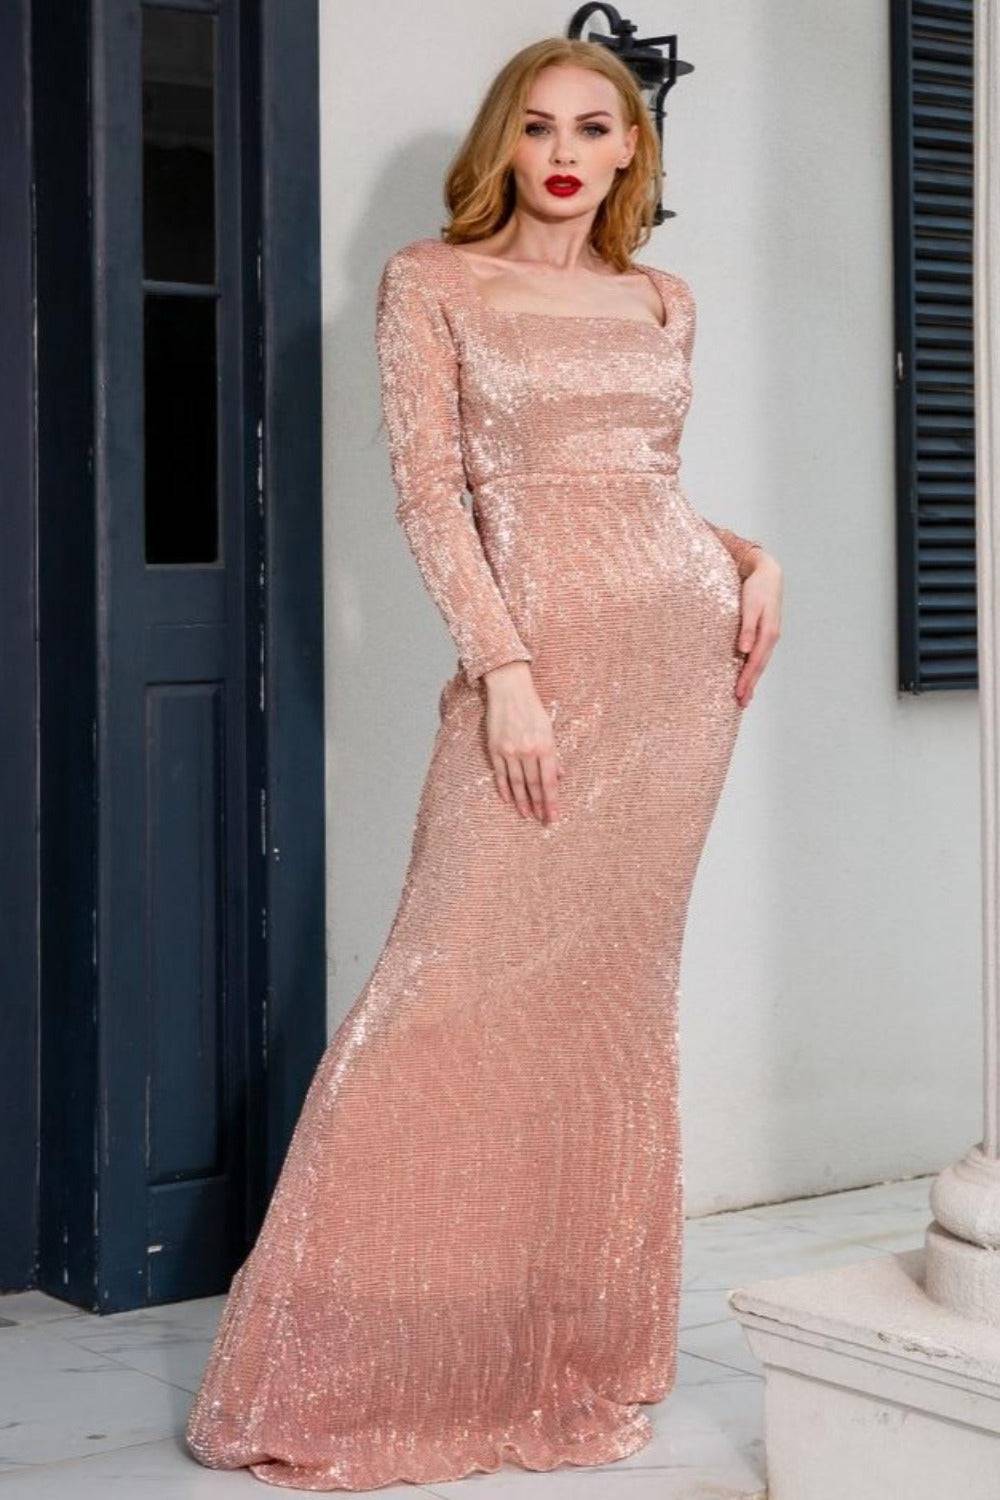 Plus Size Gold Sequins Maxi Dress - TGC Boutique - Evening Gown